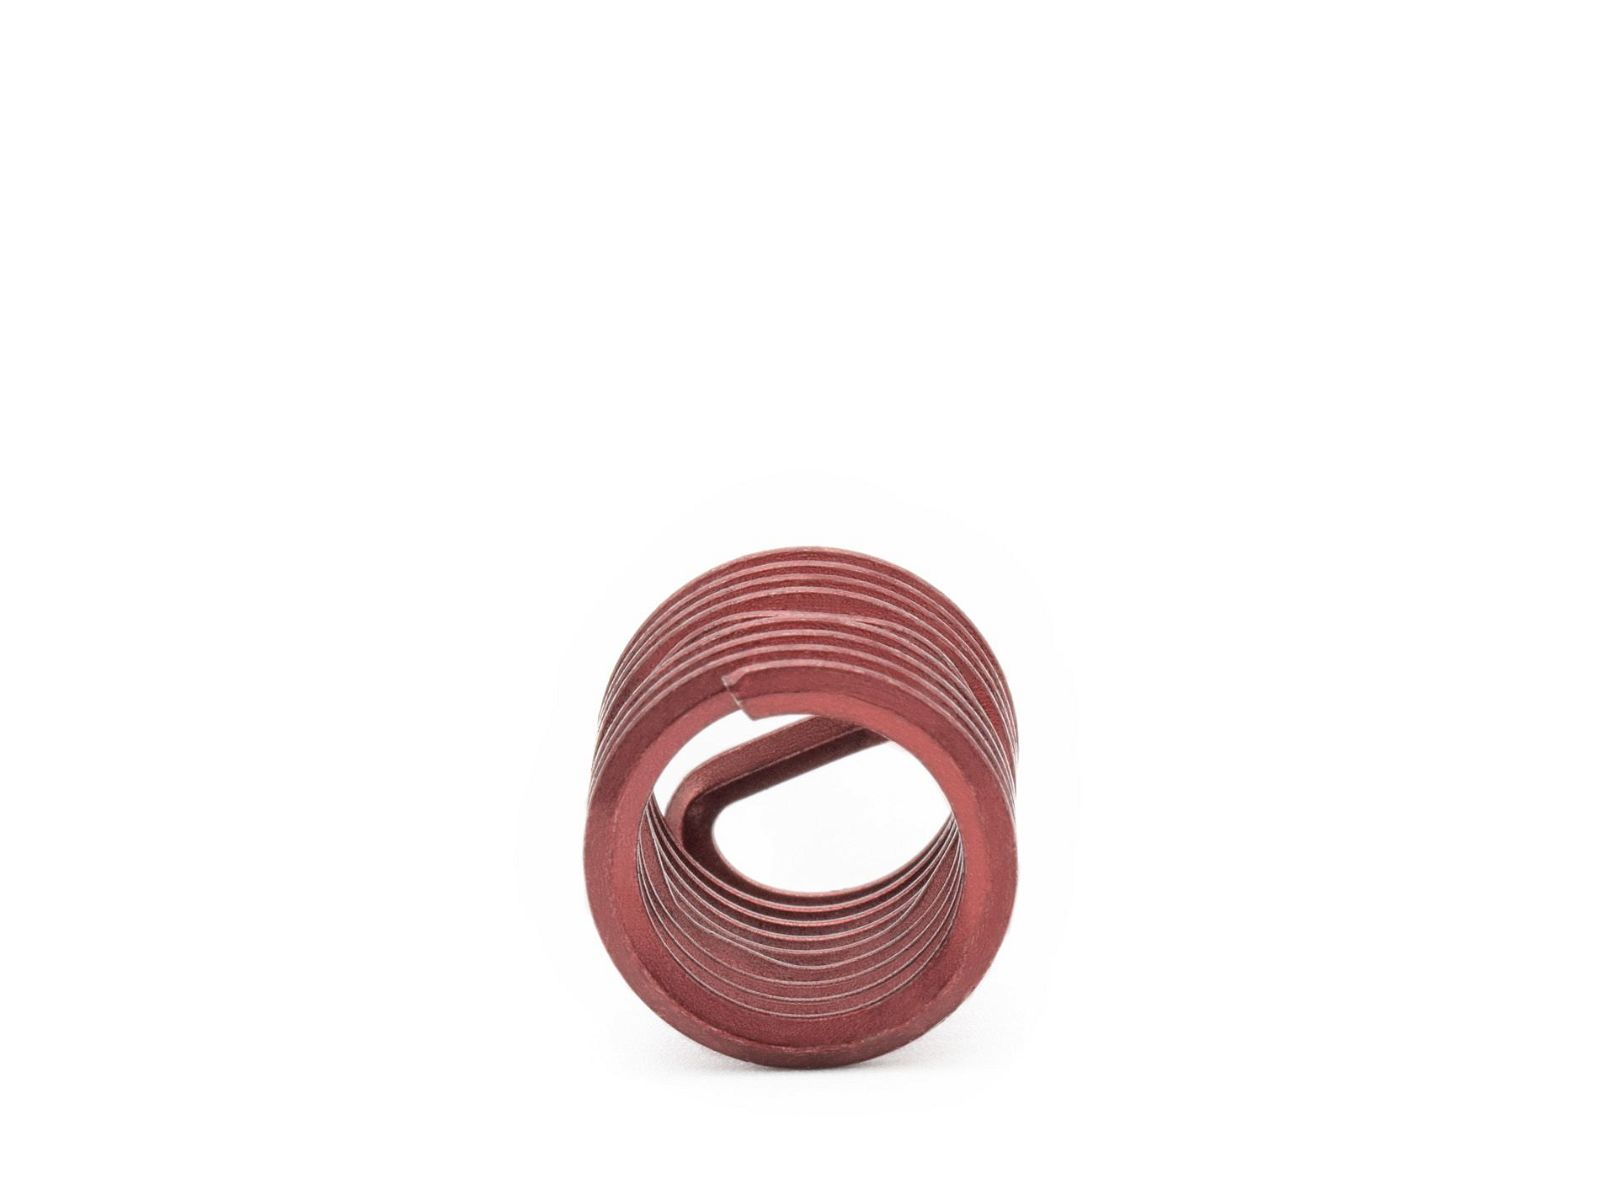 BaerCoil Wire Thread Inserts BSW 1/4 x 20 - 1.5 D (9.53 mm) - screw grip (screw locking) - 100 pcs.